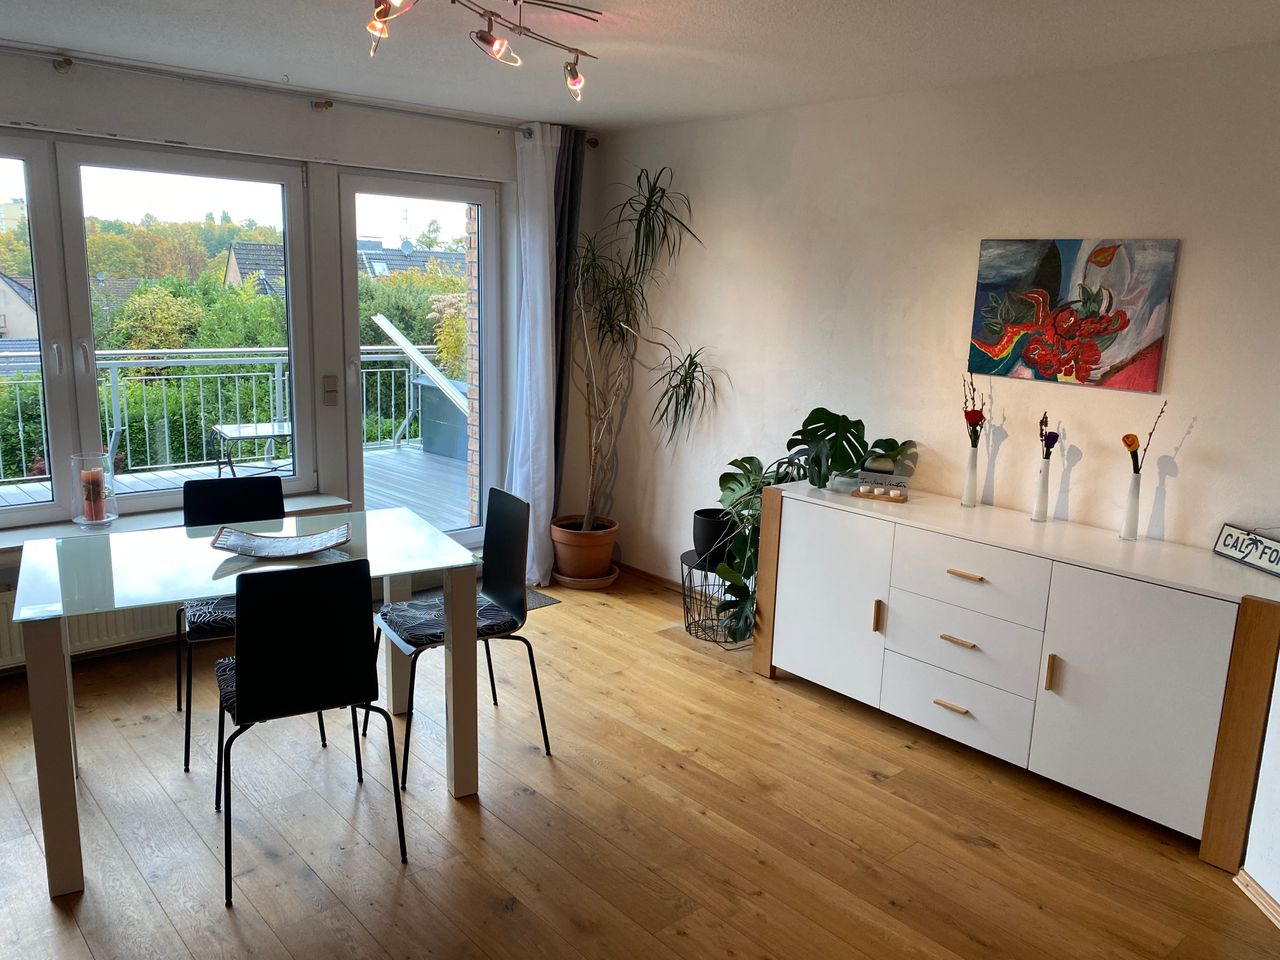 Charming apartment in popular area (Essen)